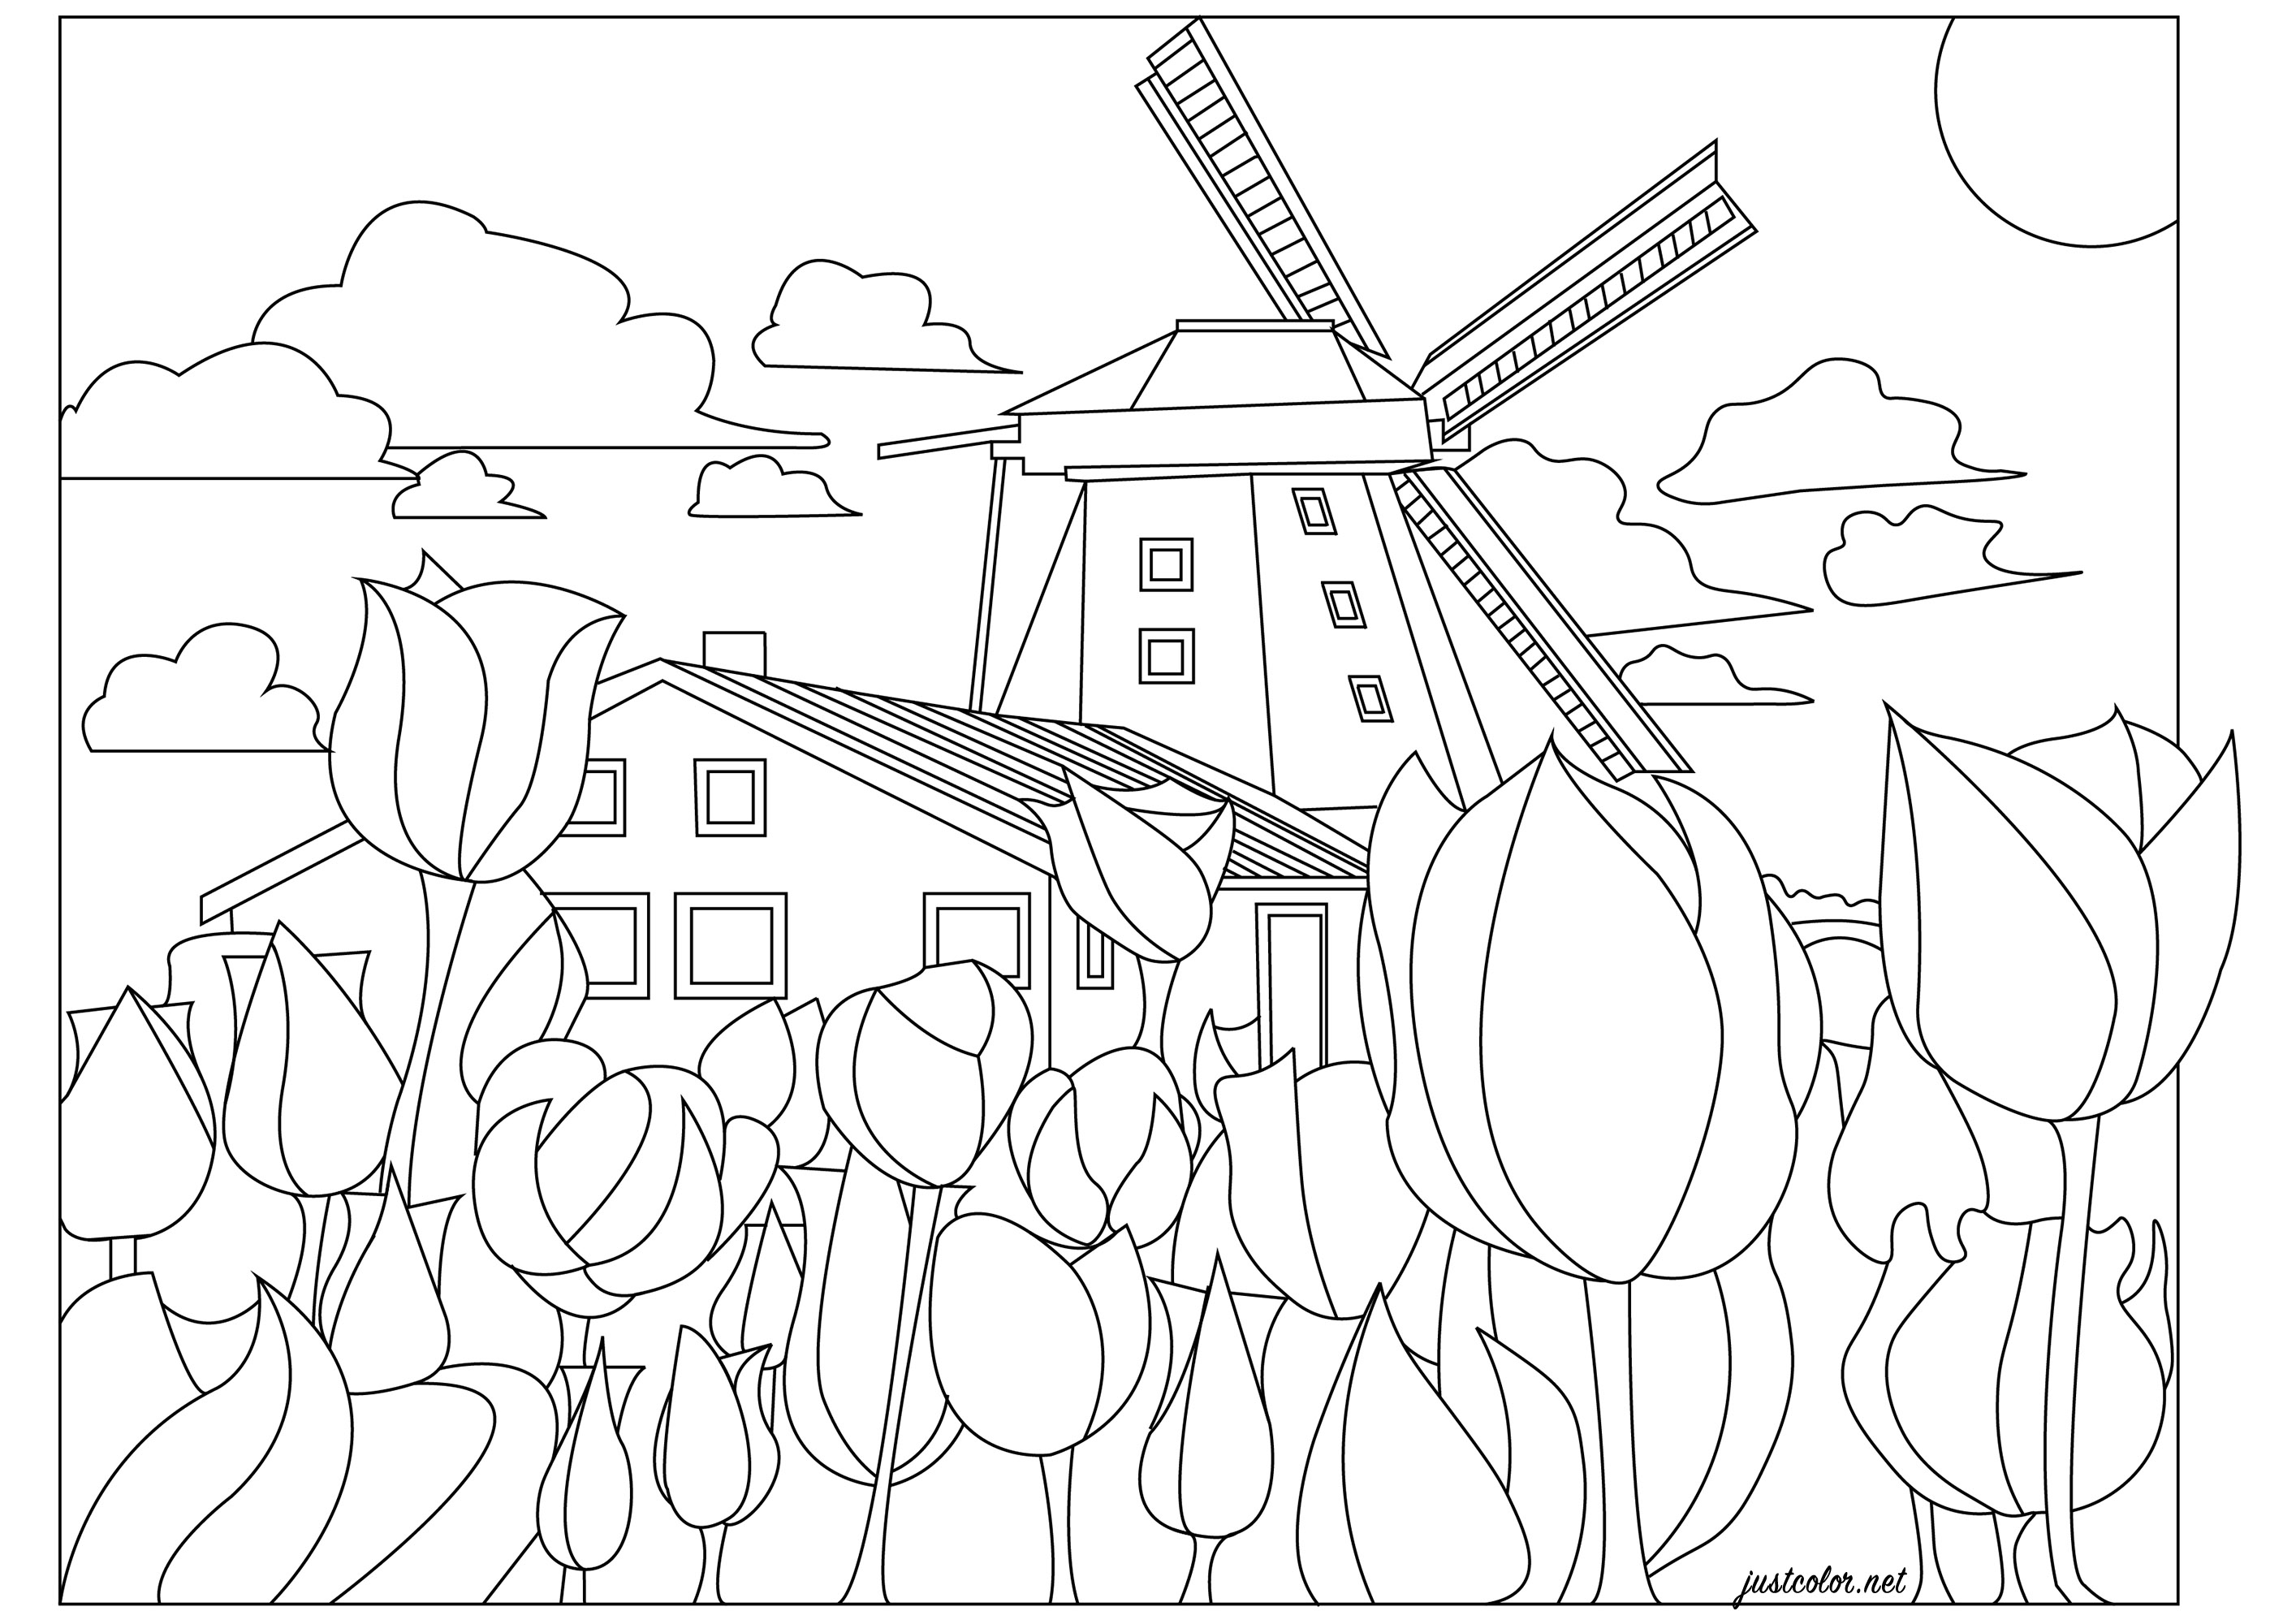 Les Pays-Bas, le joli pays des moulins à vent et des champs de tulipes. La campagne hollandaise au printemps ! Un coloriage avec des tulipes aux mille couleurs (de votre choix), un moulin et une maison typiquement hollandaise, Artiste : Morgan